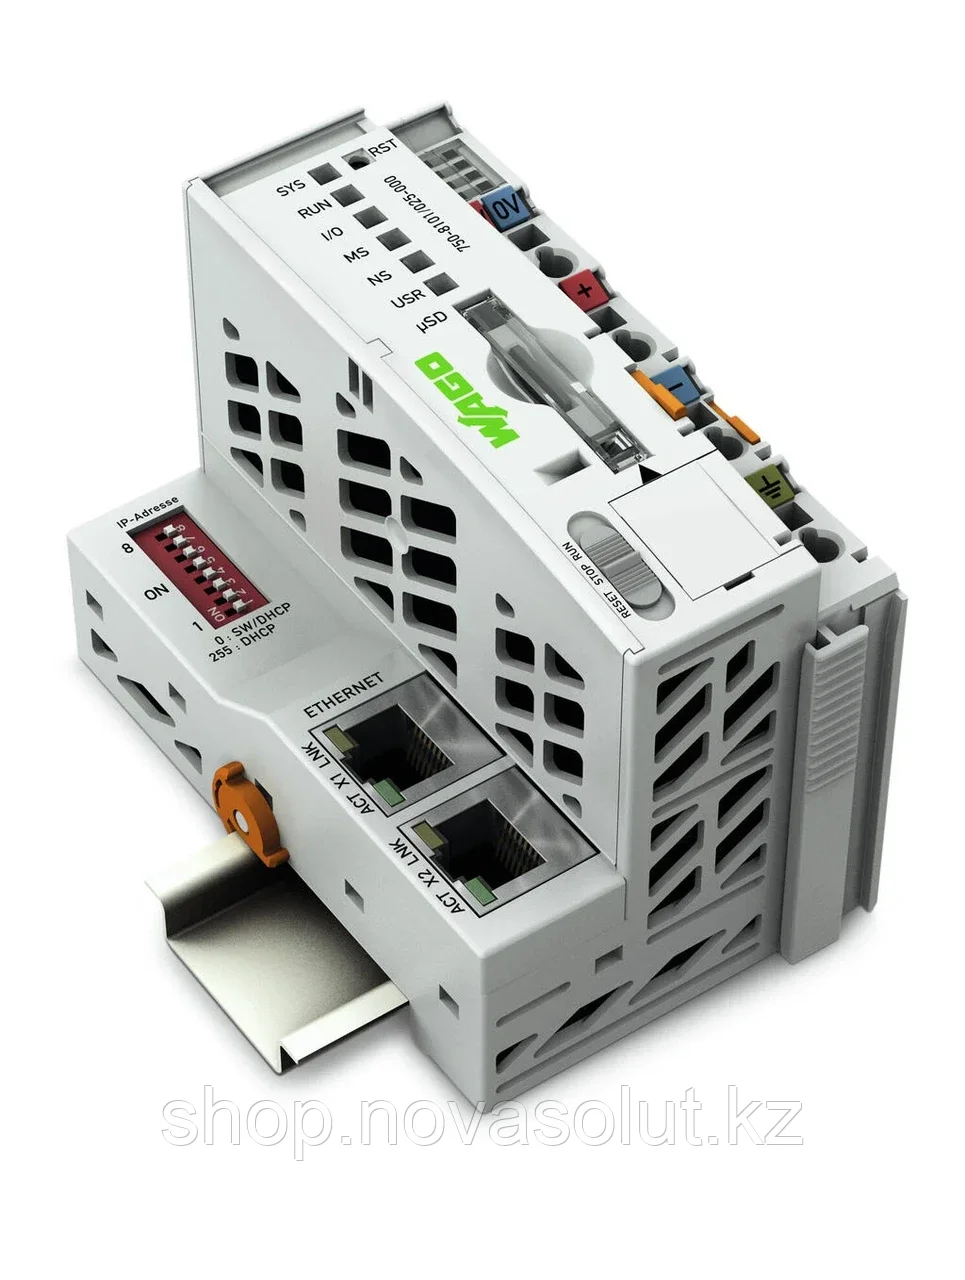 Контроллер PFC100 2 порта ETHERNET, RS-232/-485 с увеличенным температурным режимом WAGO 750-8102/025-000